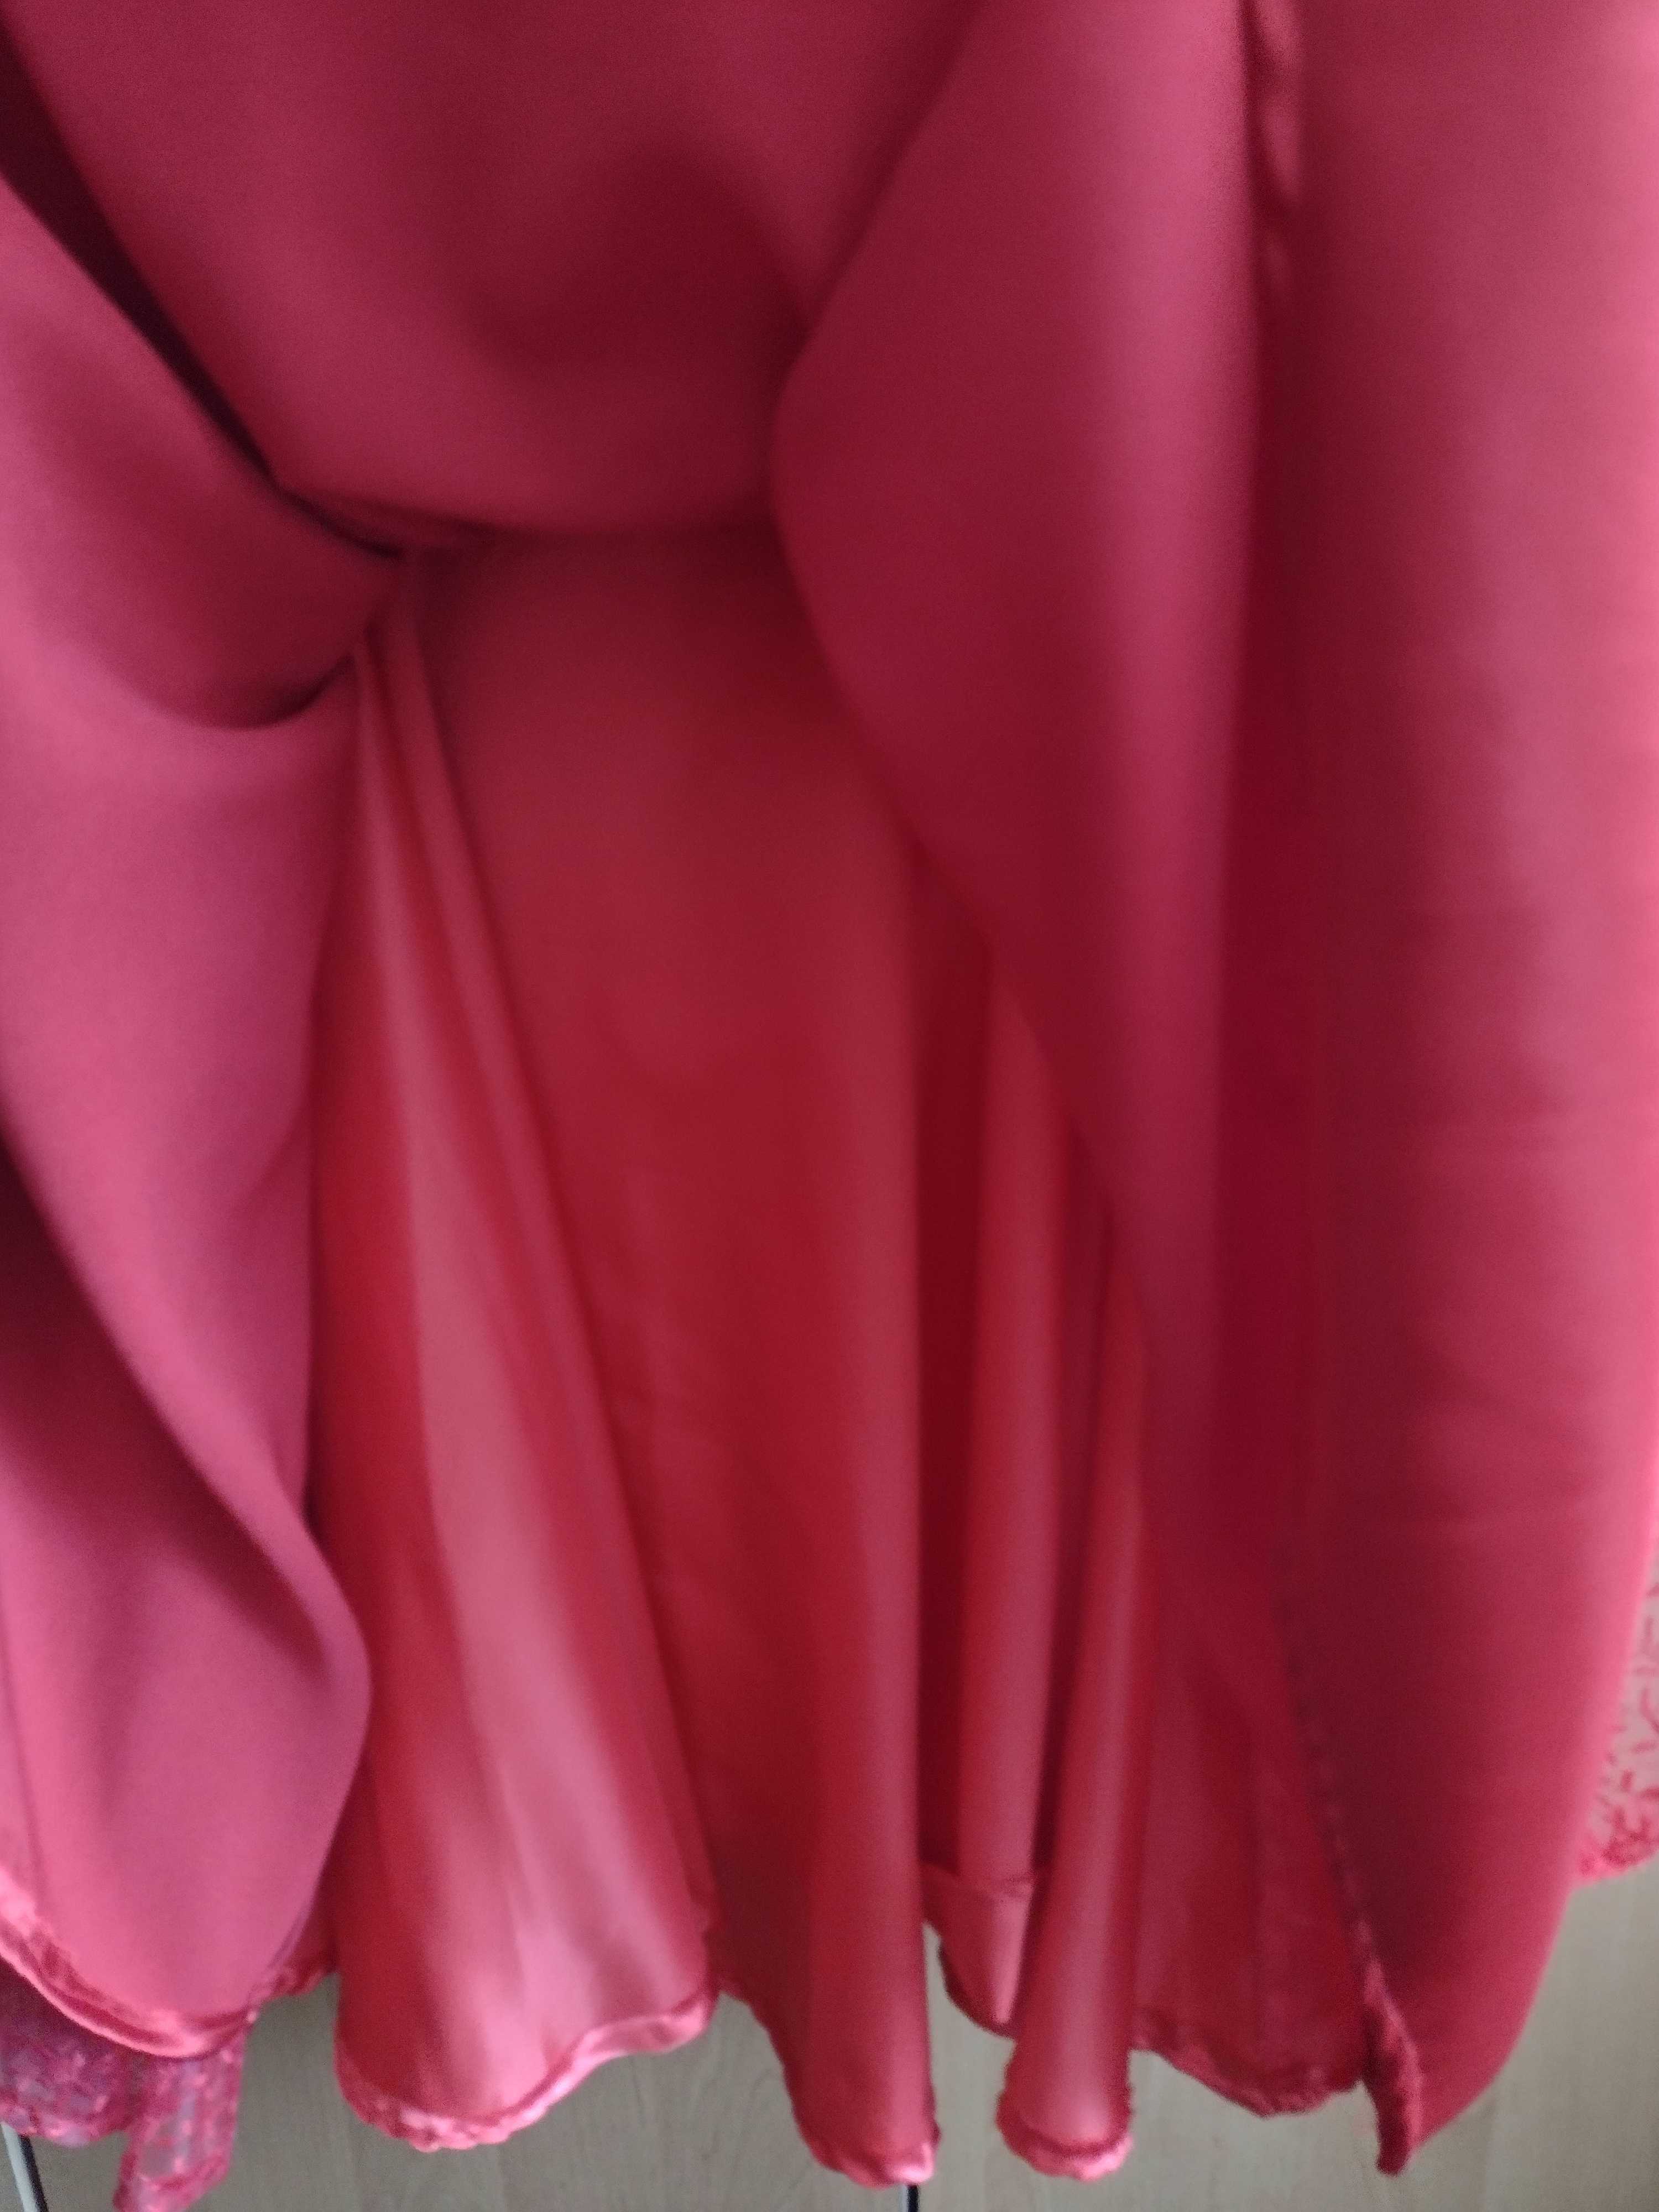 Sukienka czerwona koronkowa r. 42 sylwester studniówka wesele